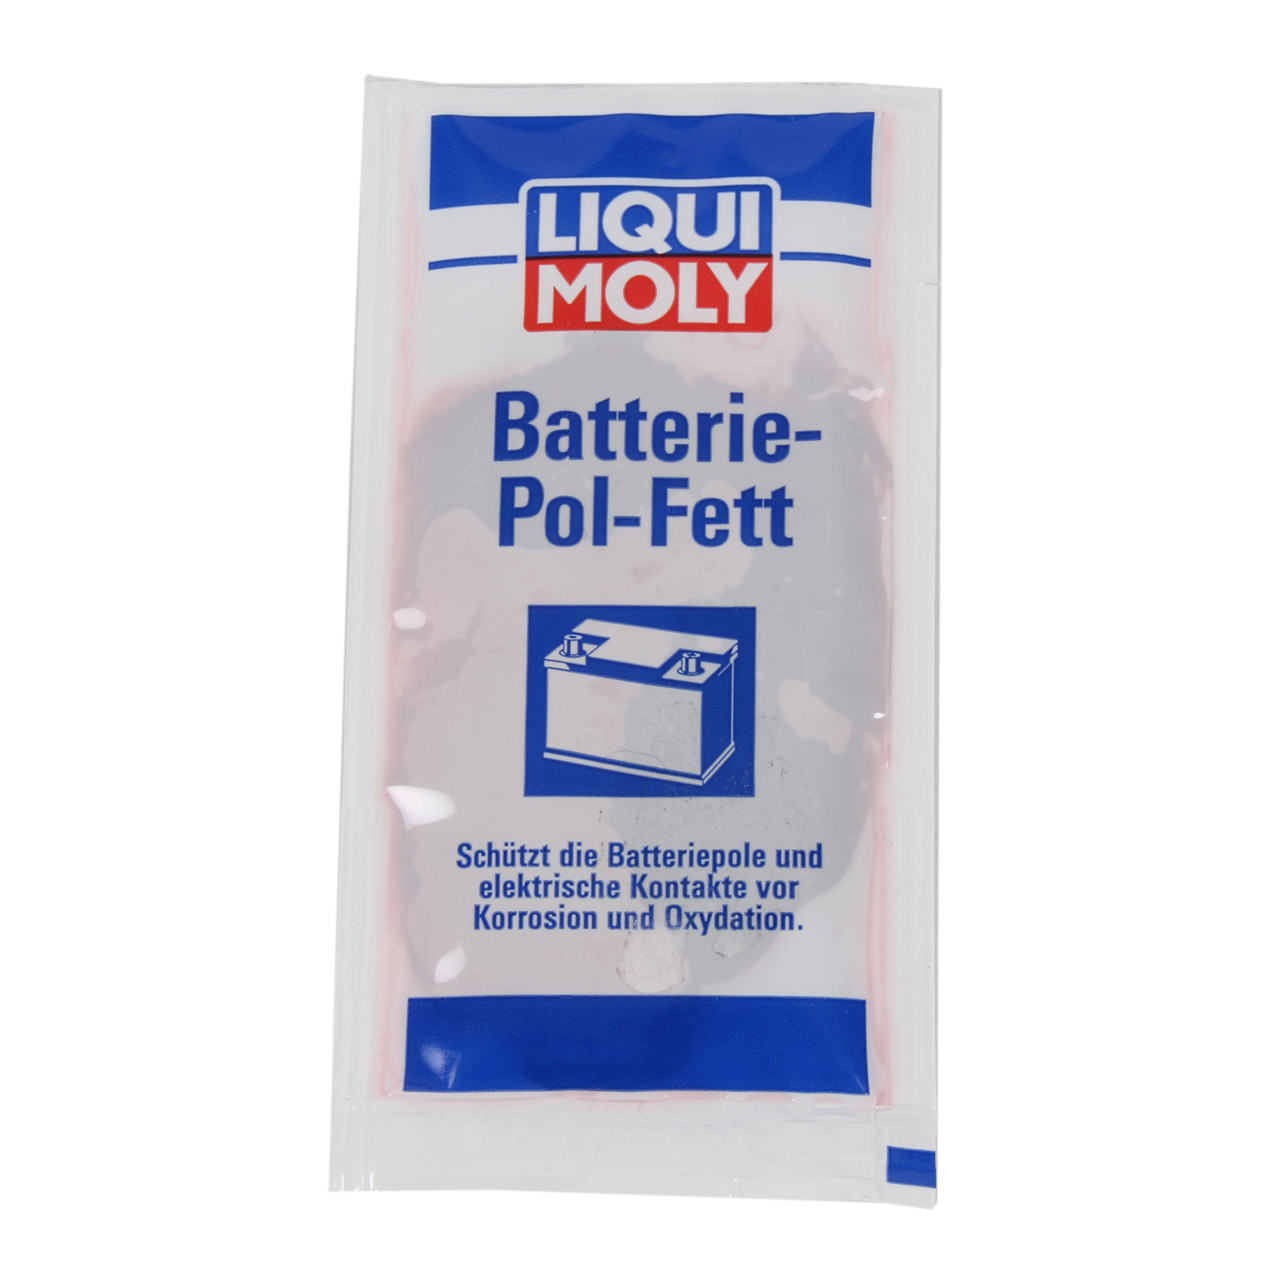 2x 10g LIQUI MOLY 3139 Batteriepolfett Batterie-Pol-Fett